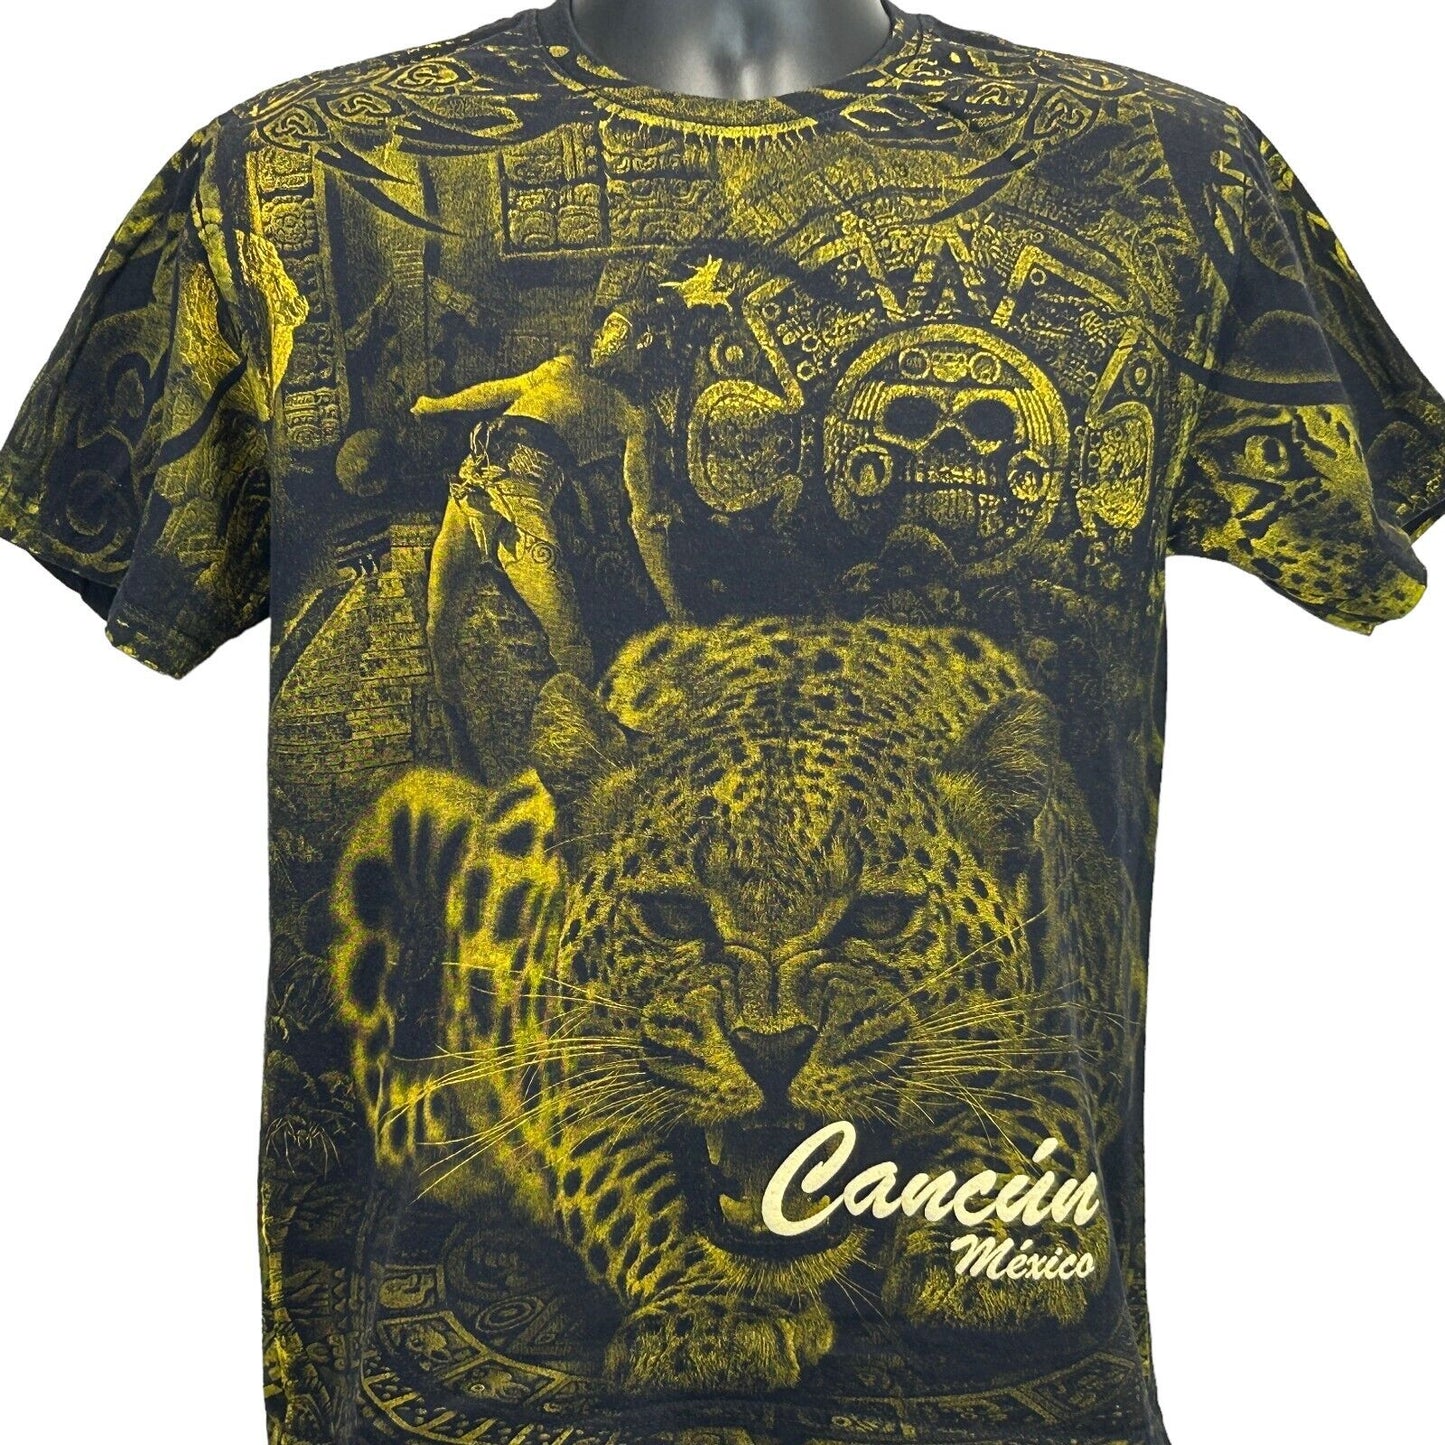 Cancun Mexico AOP T Shirt Mayan Jaguar All Over Print Black Graphic Tee Medium